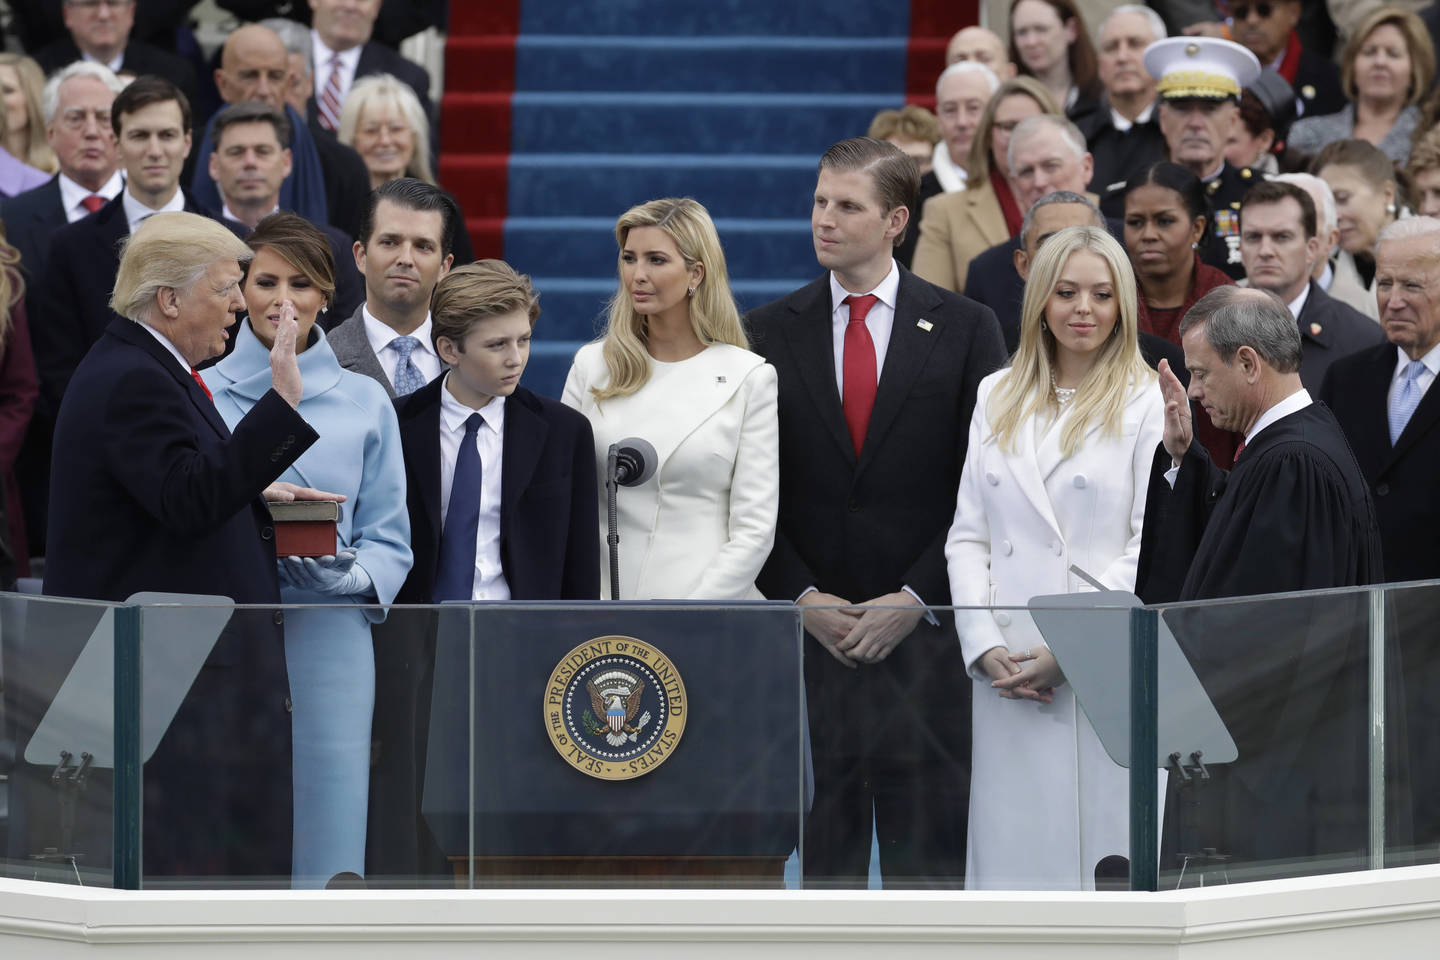  D.Trumpo priesaika tapus 45-uoju JAV prezidentu, stebint žmonai Melaniai ir kitiems jo šeimos nariams. Sausio 20 d., Vašingtonas (JAV).<br> AP nuotr.